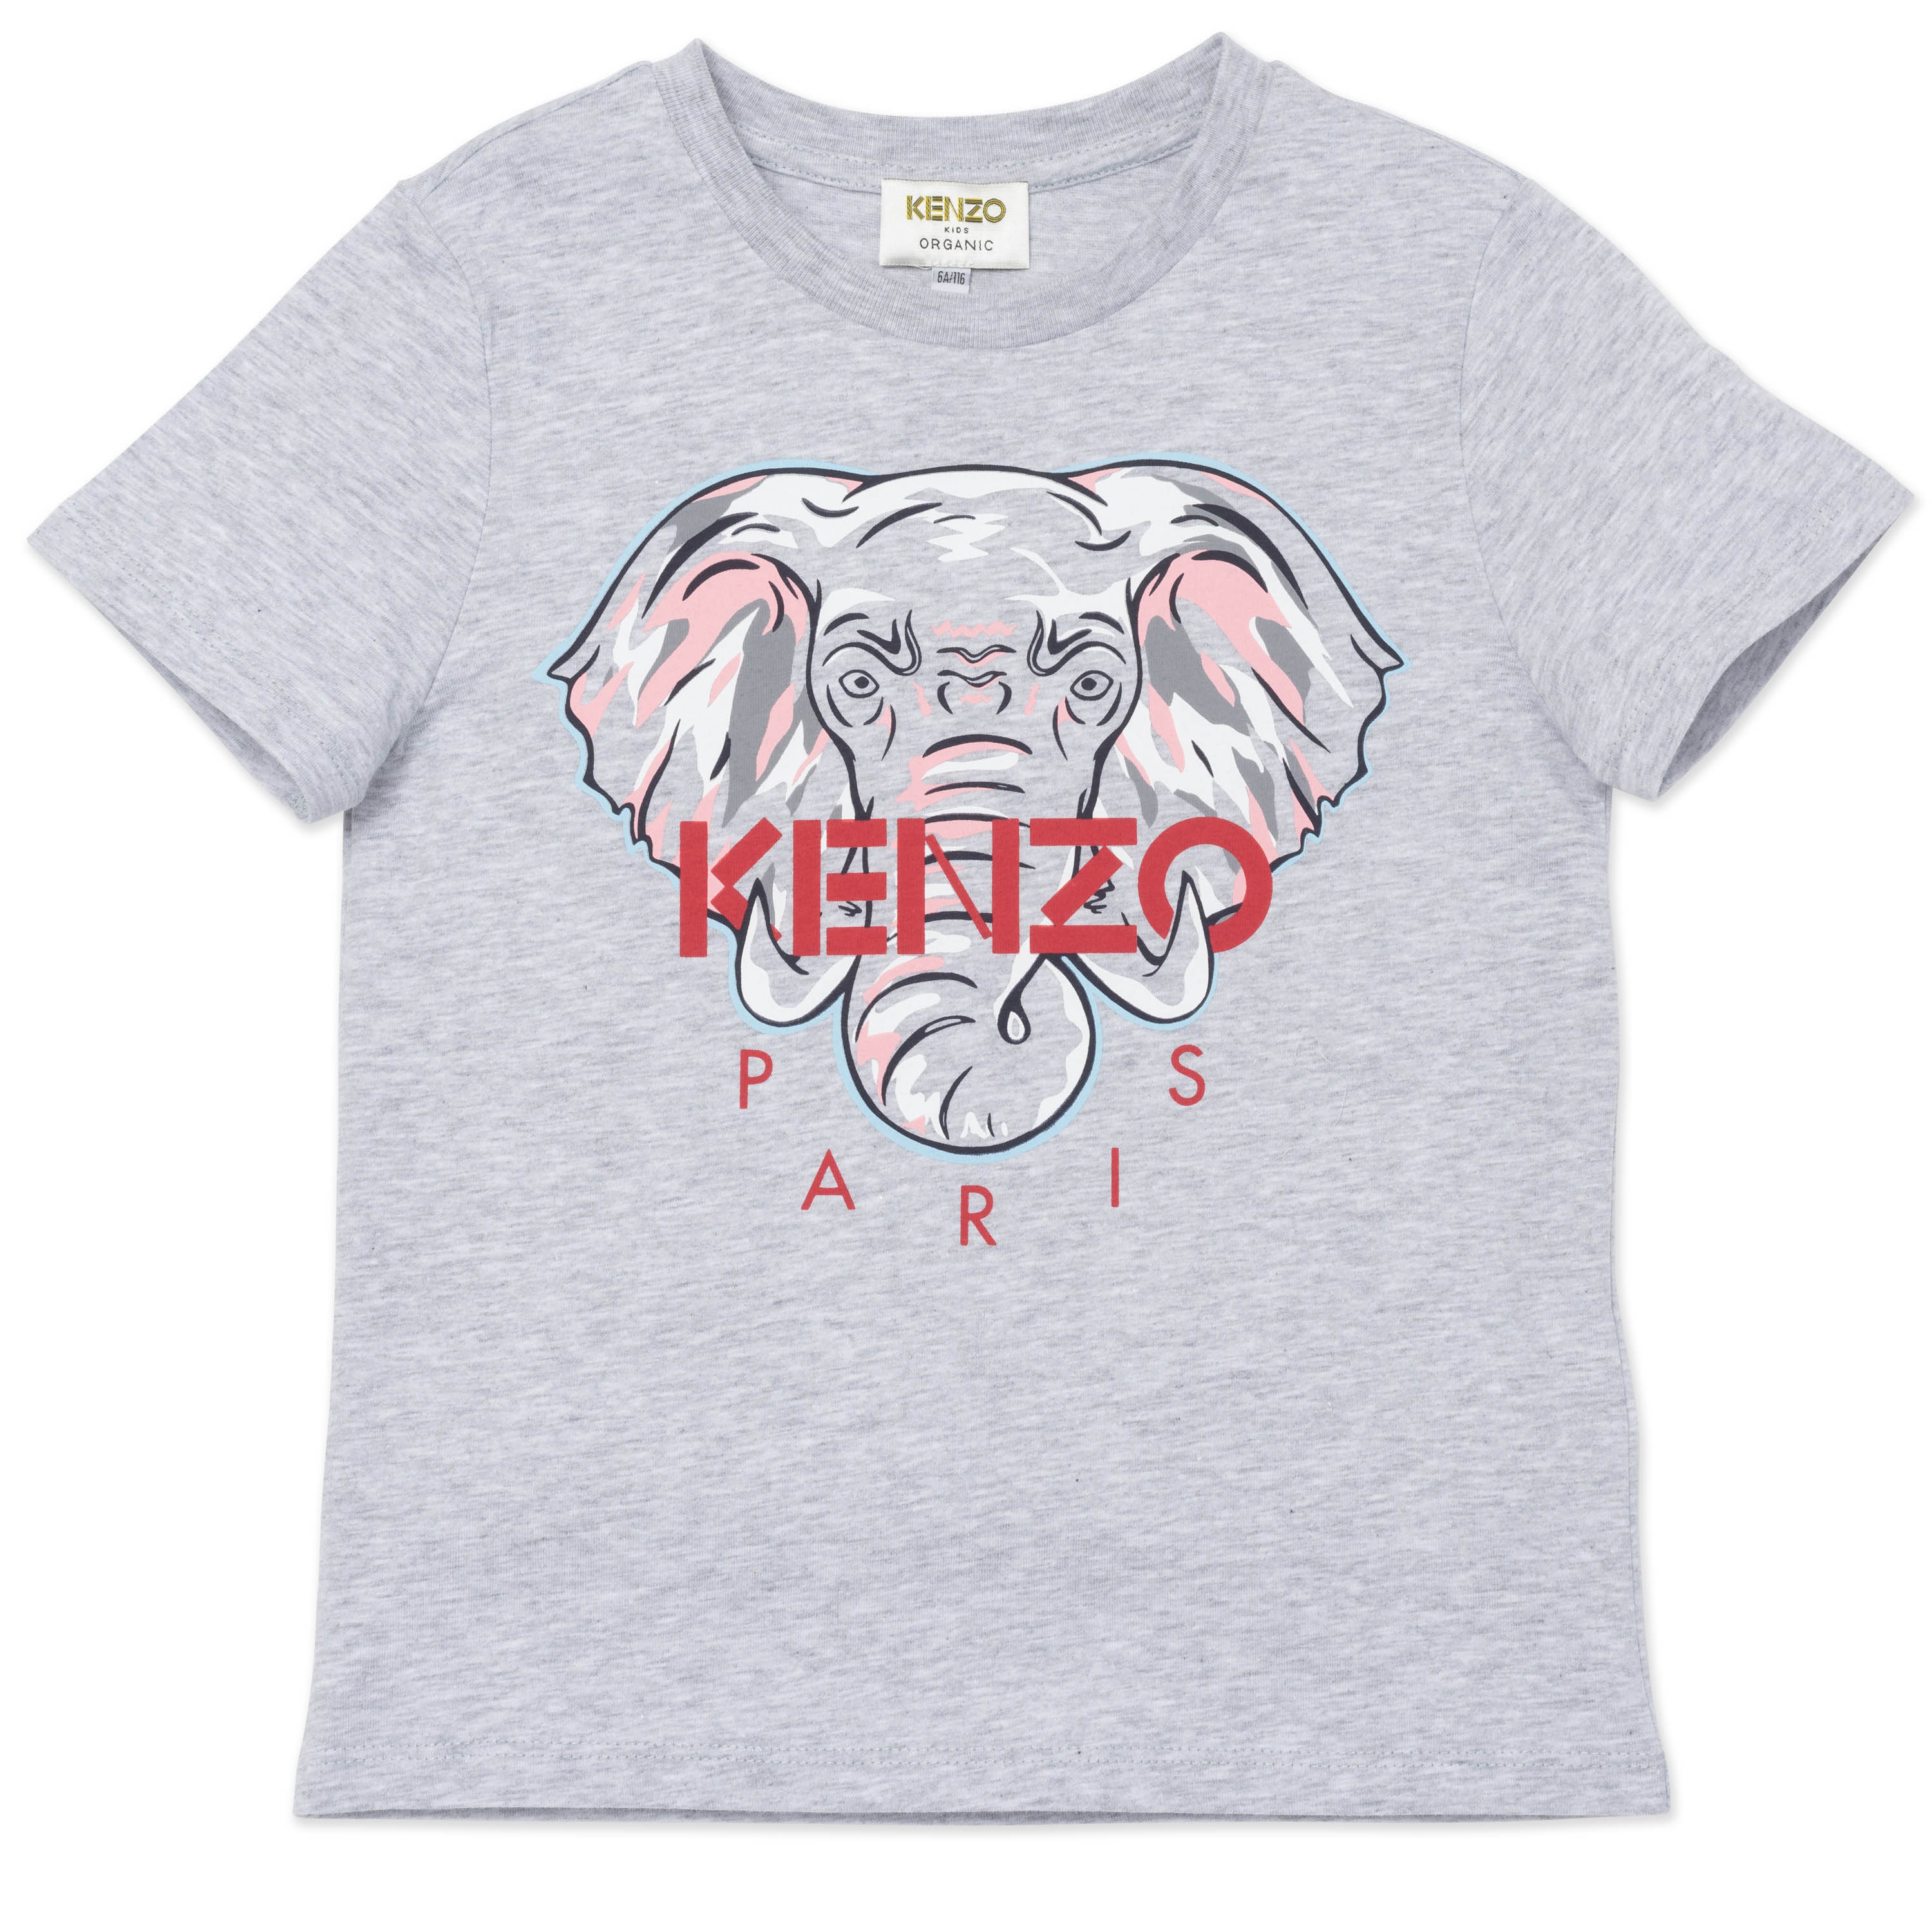 T-shirt KENZO KIDS for GIRL